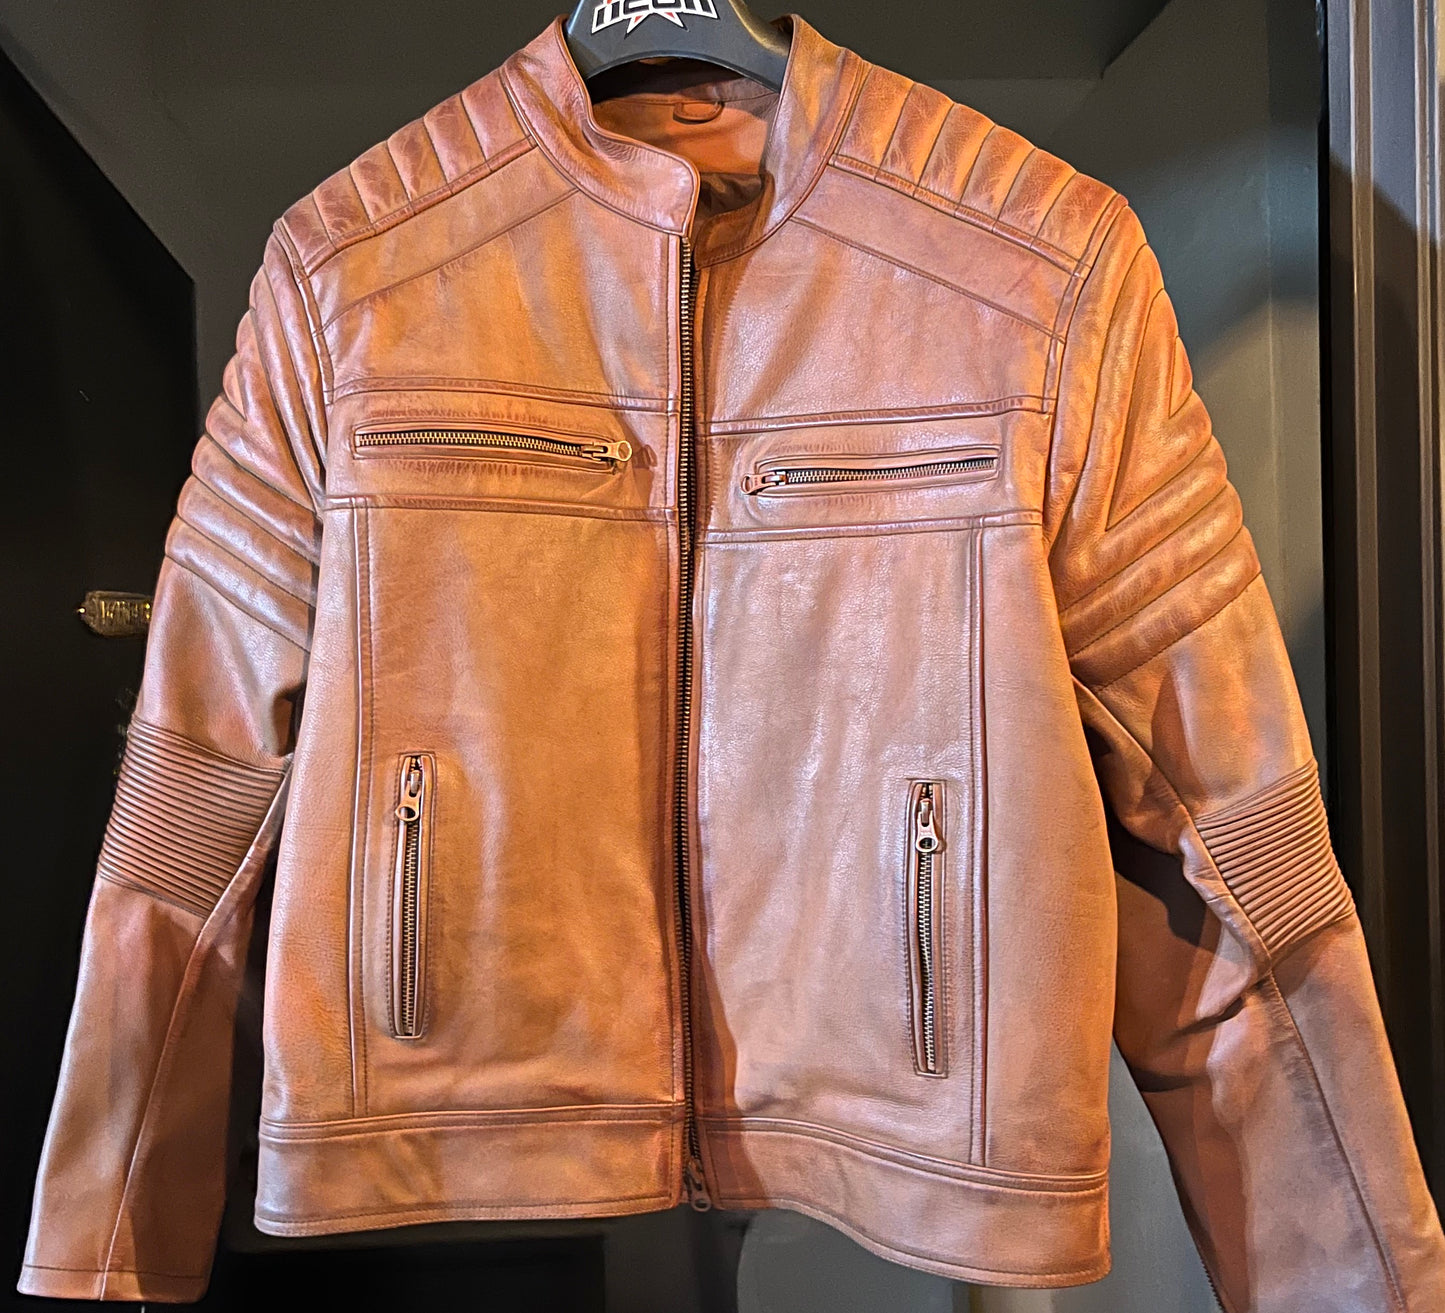 Cafe Racer style leather jacket